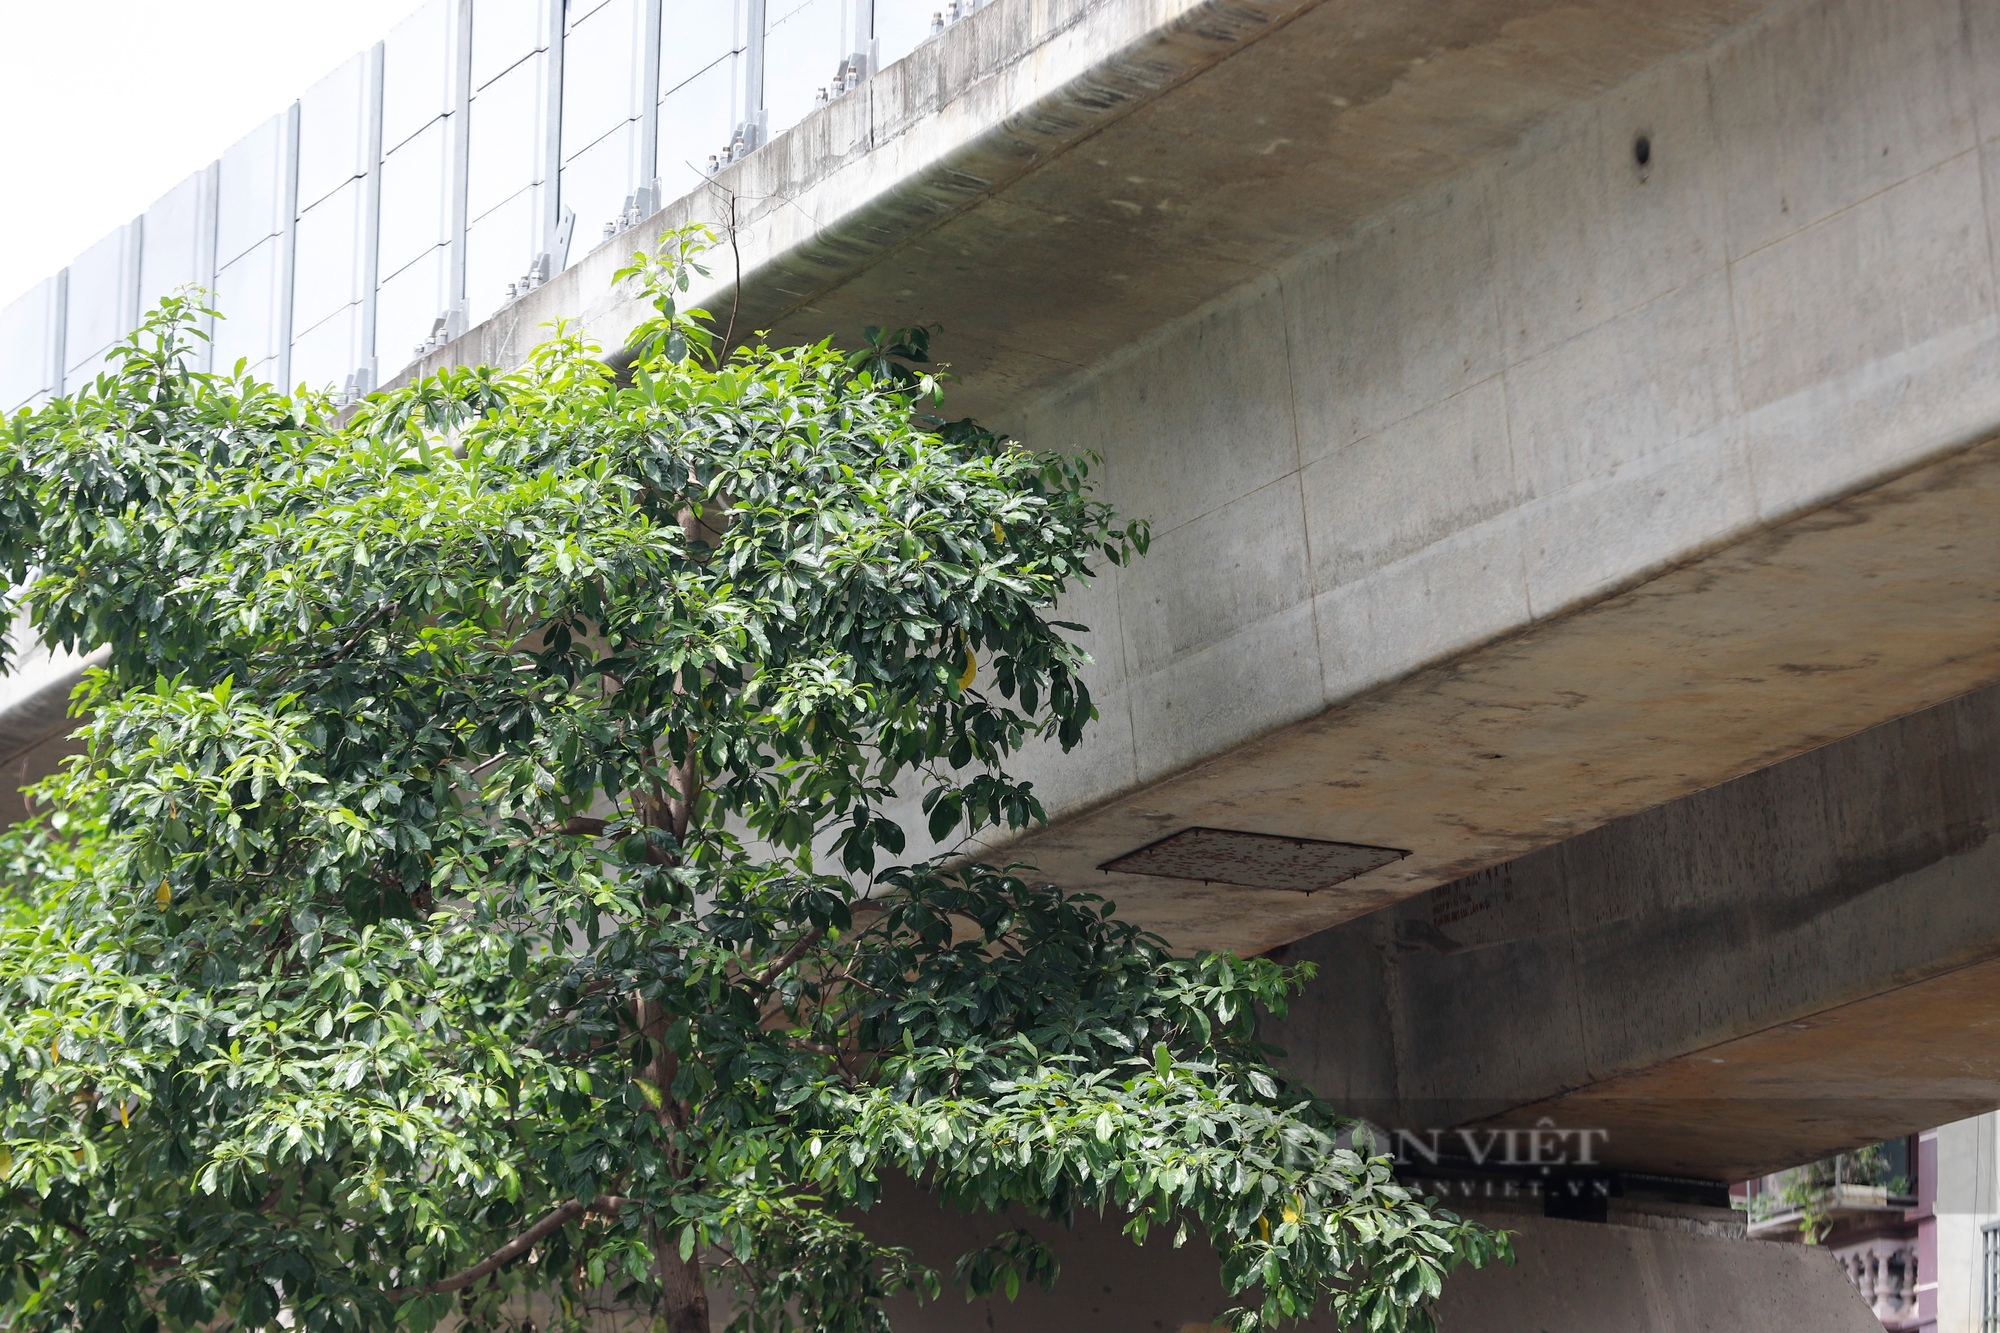 Hàng loạt cây xanh tại Hà Nội khi lớn đã “đụng” vào gầm bê tông đường sắt Cát Linh-Hà Đông - Ảnh 5.